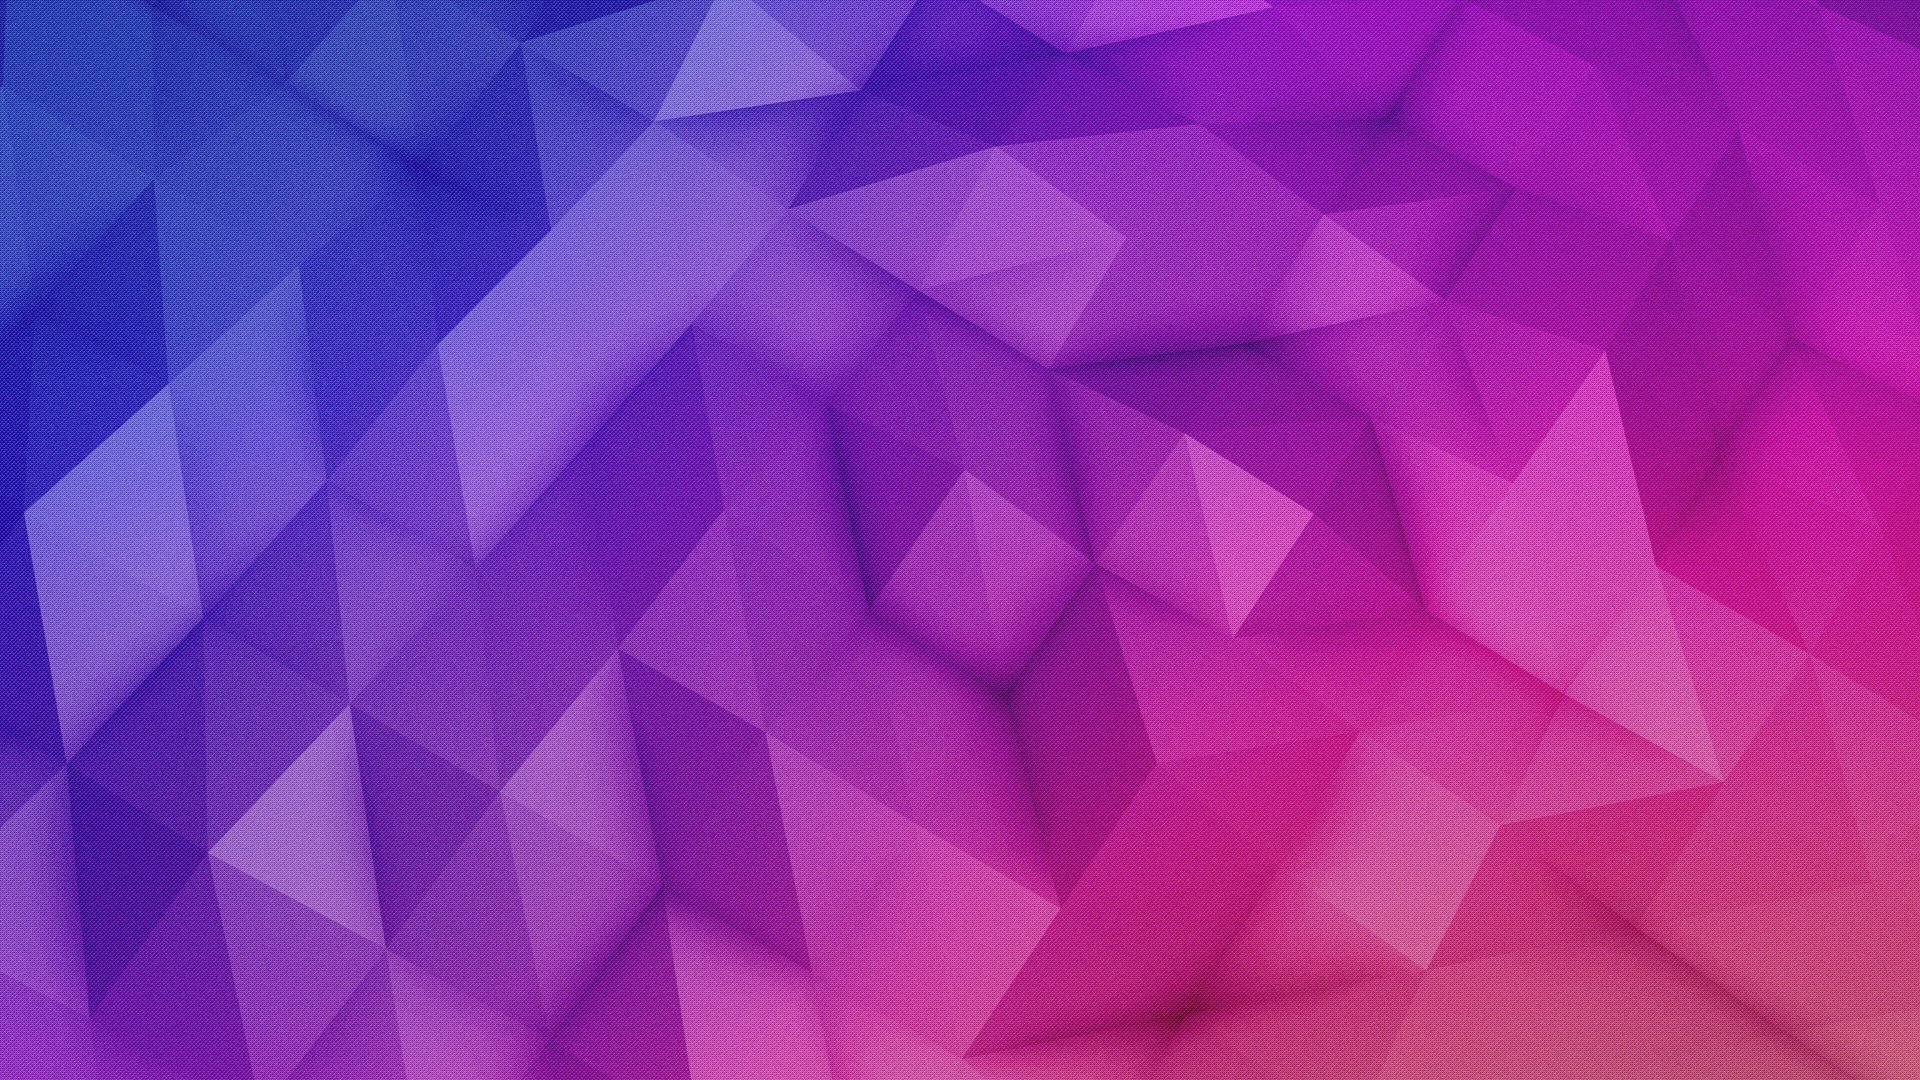 Texture pink violet wallpaper | 1920x1080 | 438450 | WallpaperUP